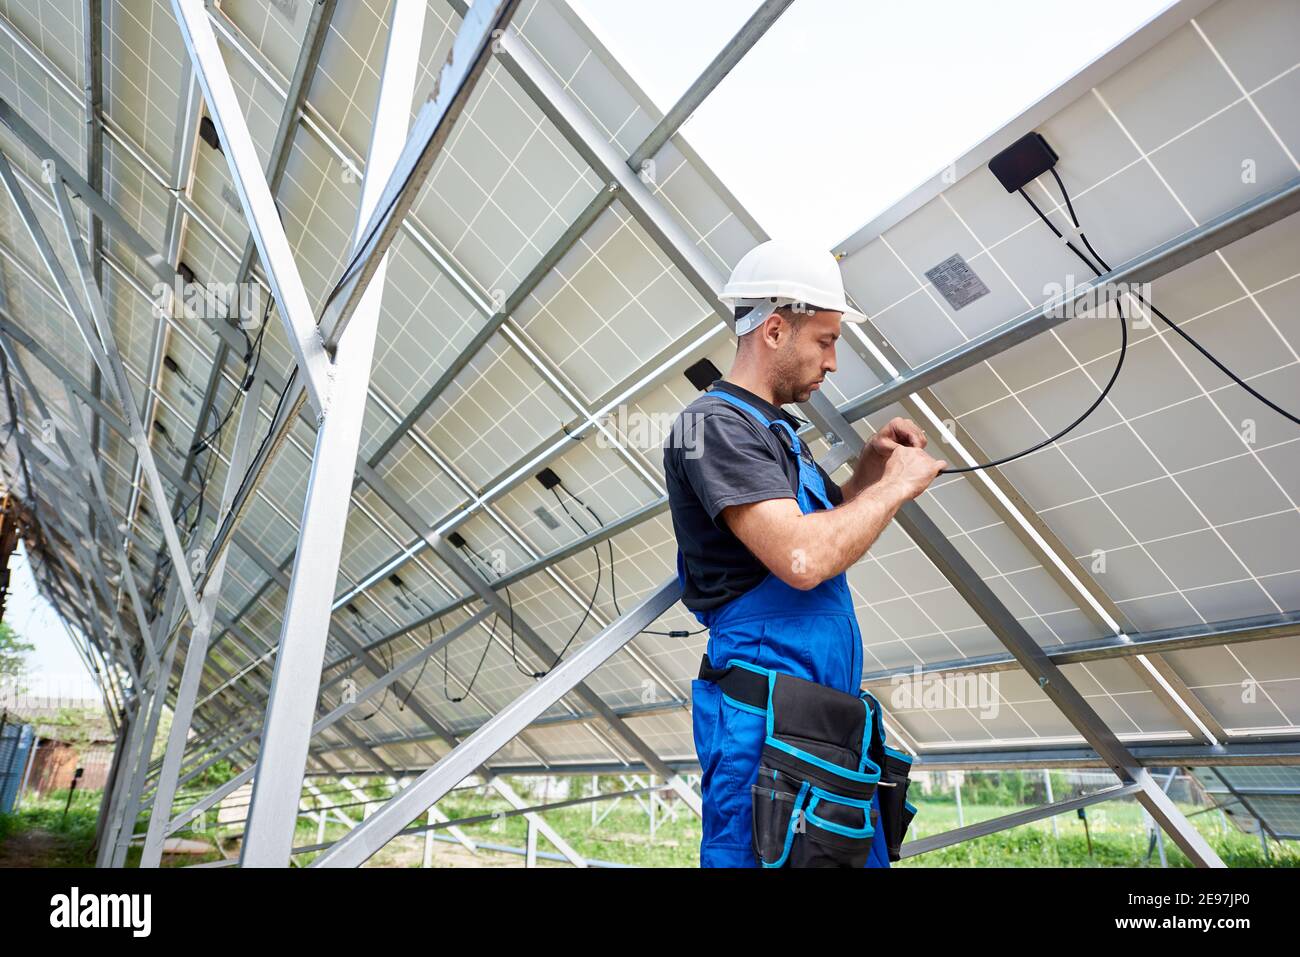 Junge Ingenieur Techniker macht elektrische Verkabelung stehen innerhalb hohe außen Solarpanel Foto voltaic System an hellen sonnigen Sommertag. Umweltfreundliche billige Stromerzeugung Konzept. Stockfoto